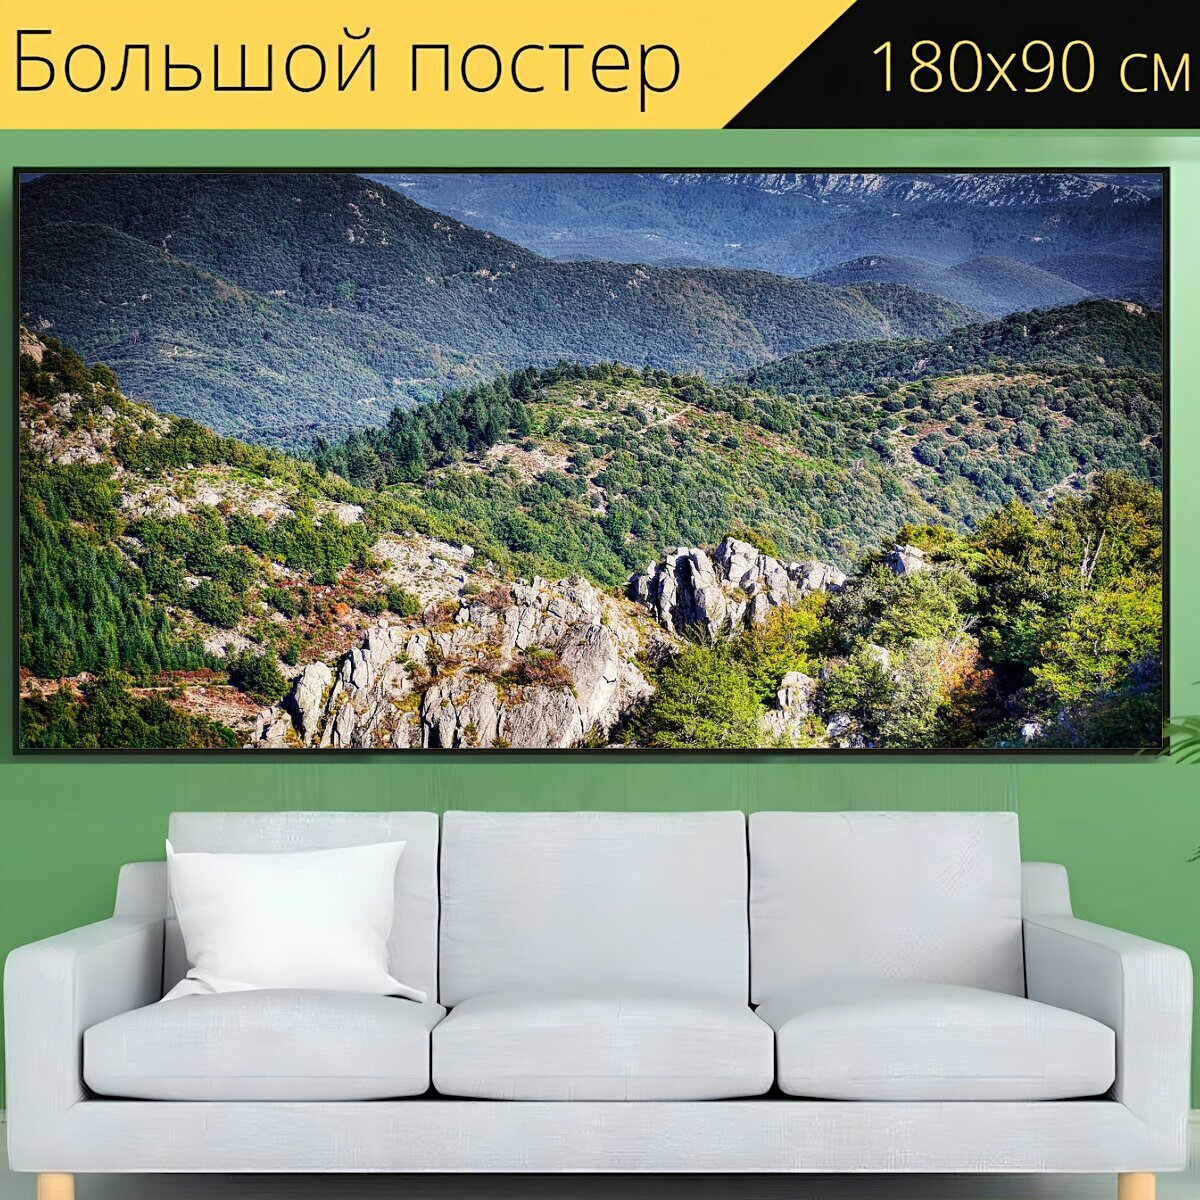 Большой постер "Горы, деревья, лес" 180 x 90 см. для интерьера